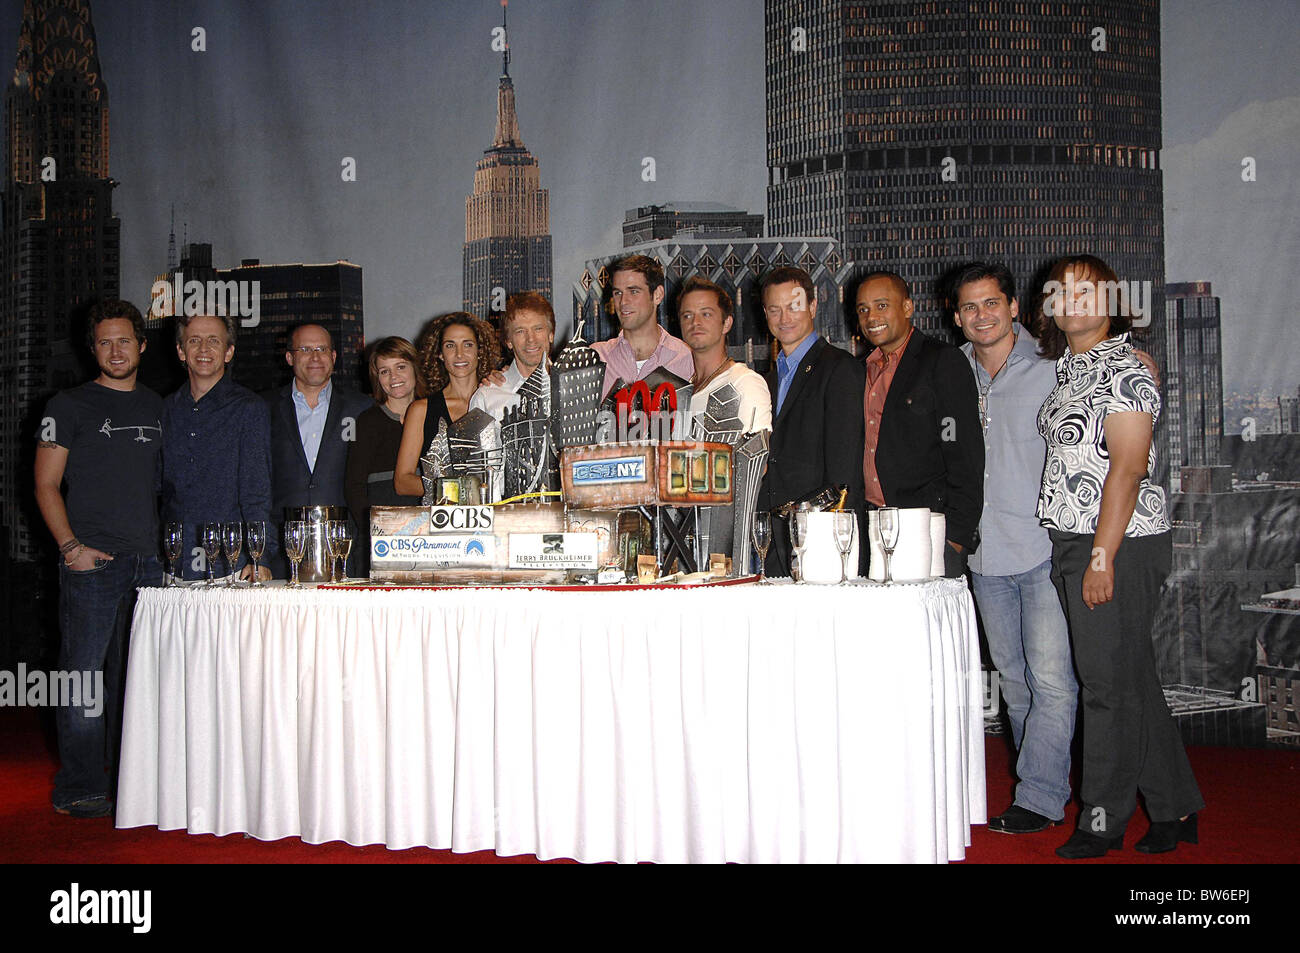 CSI:NY 100th Episode Cake Cutting Celebration Stock Photo